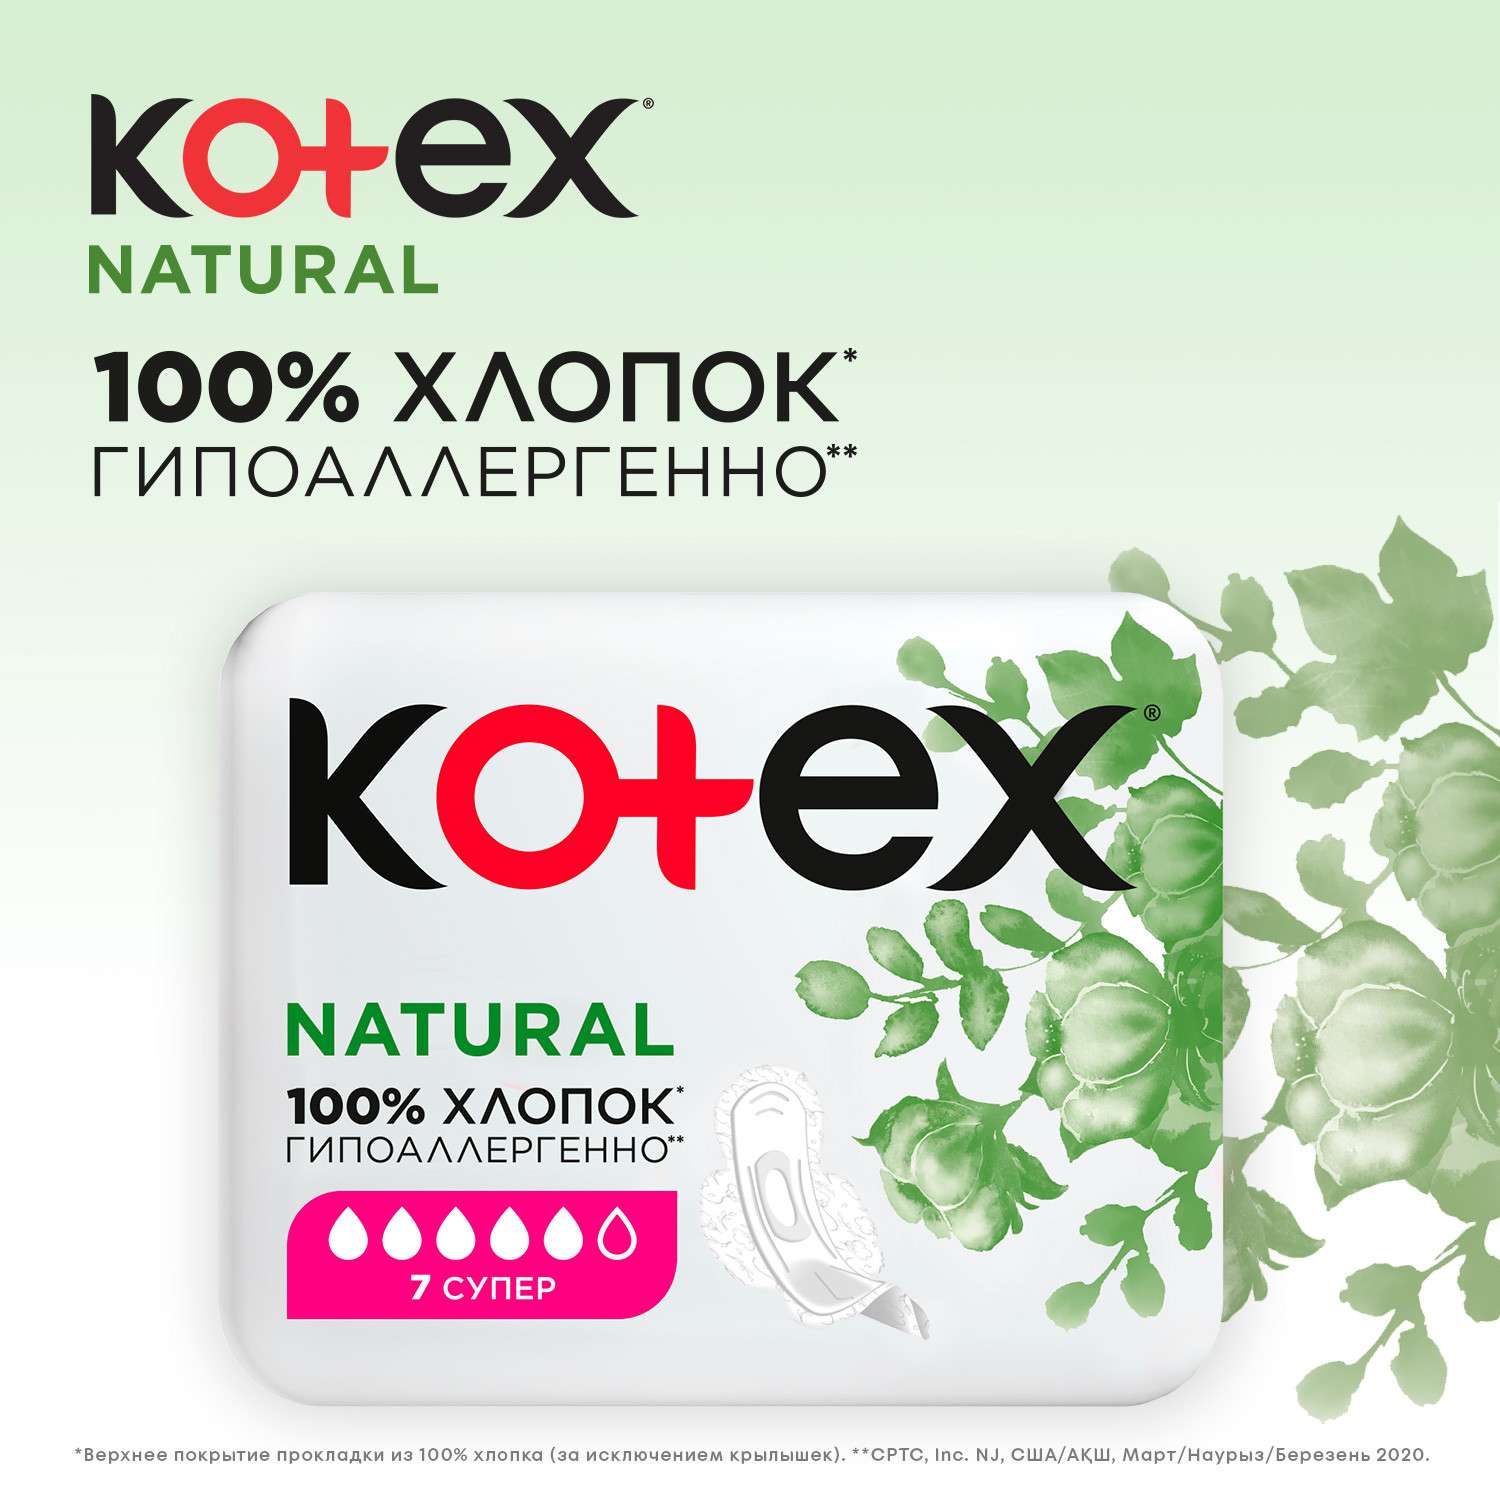 Прокладки KOTEX Natural Super 14шт - фото 5